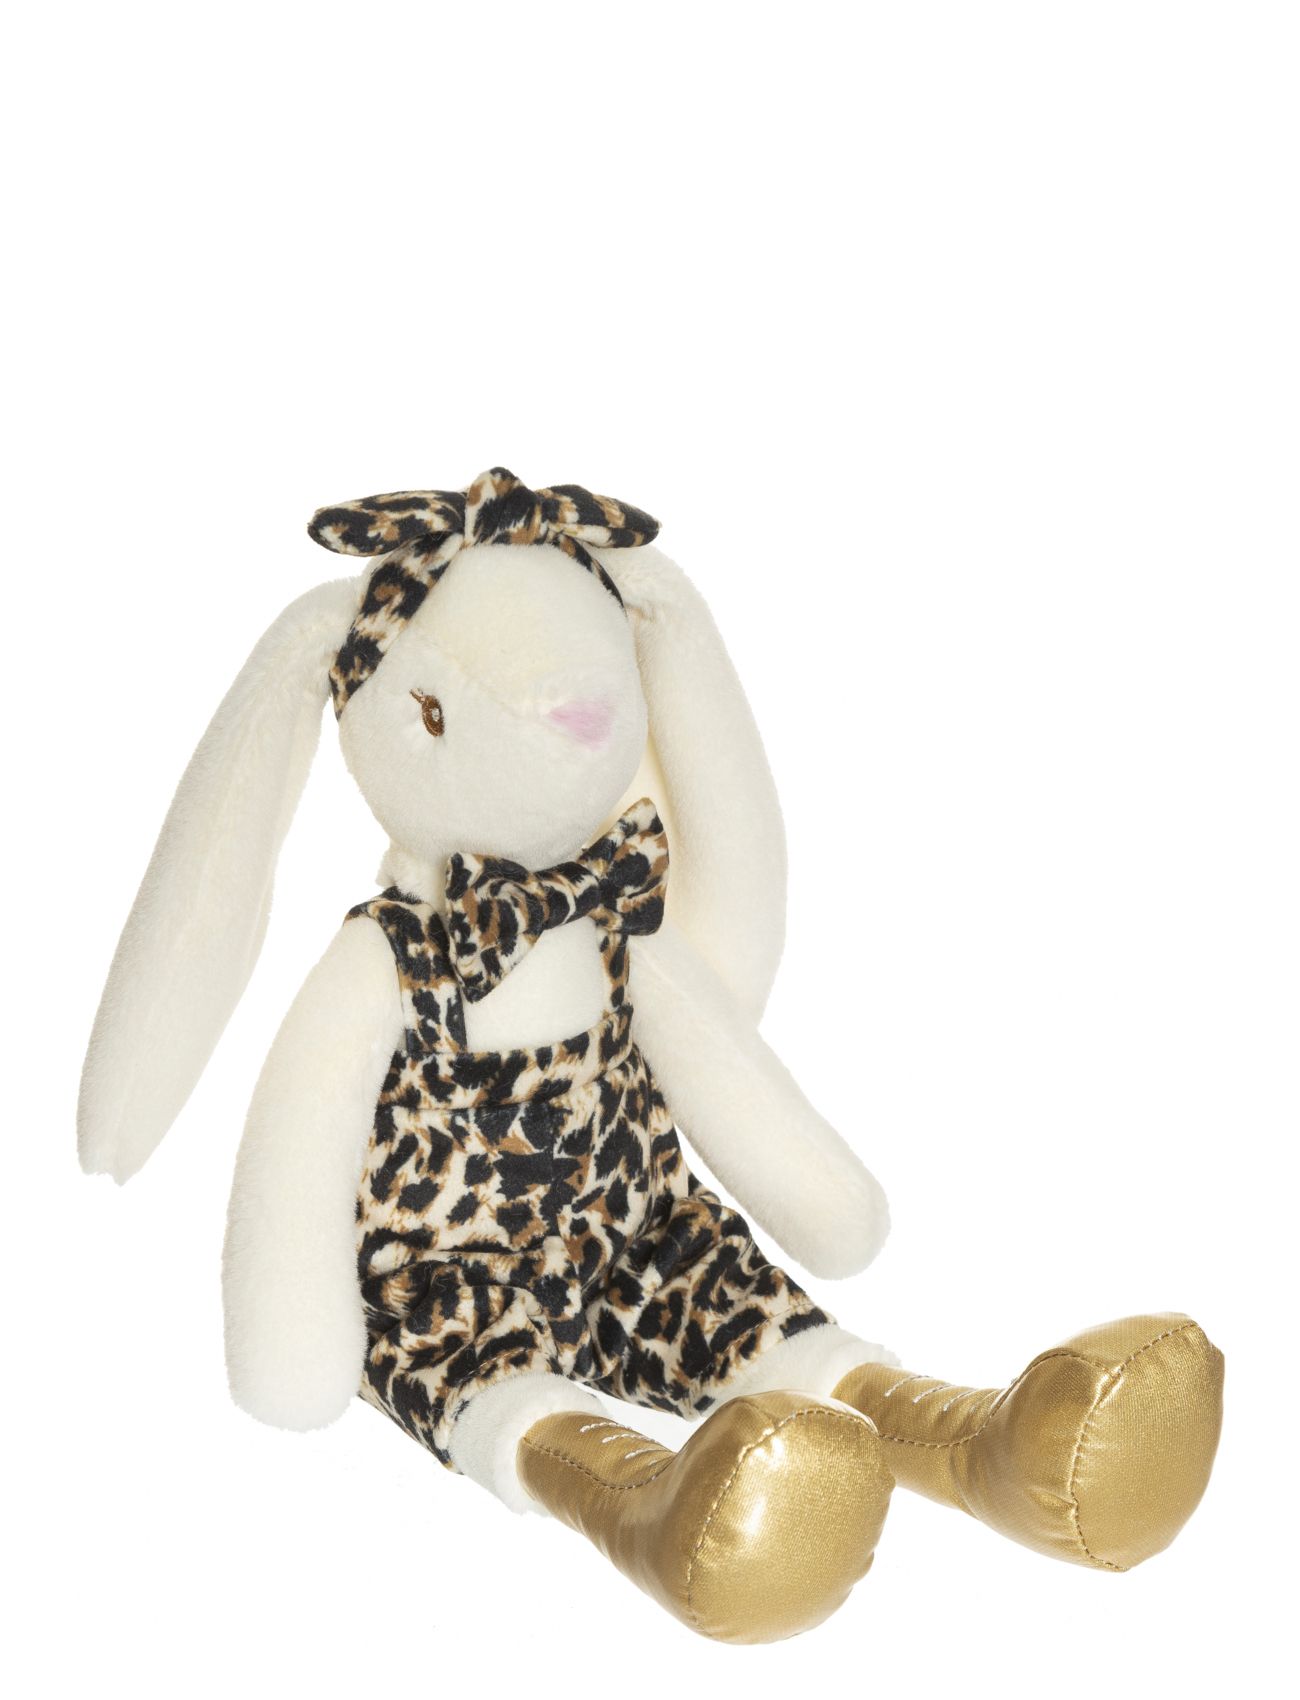 Teddykompaniet Louise, Leopard Pattern Toys Soft Toys Stuffed Animals Multi/mønstret Teddykompaniet